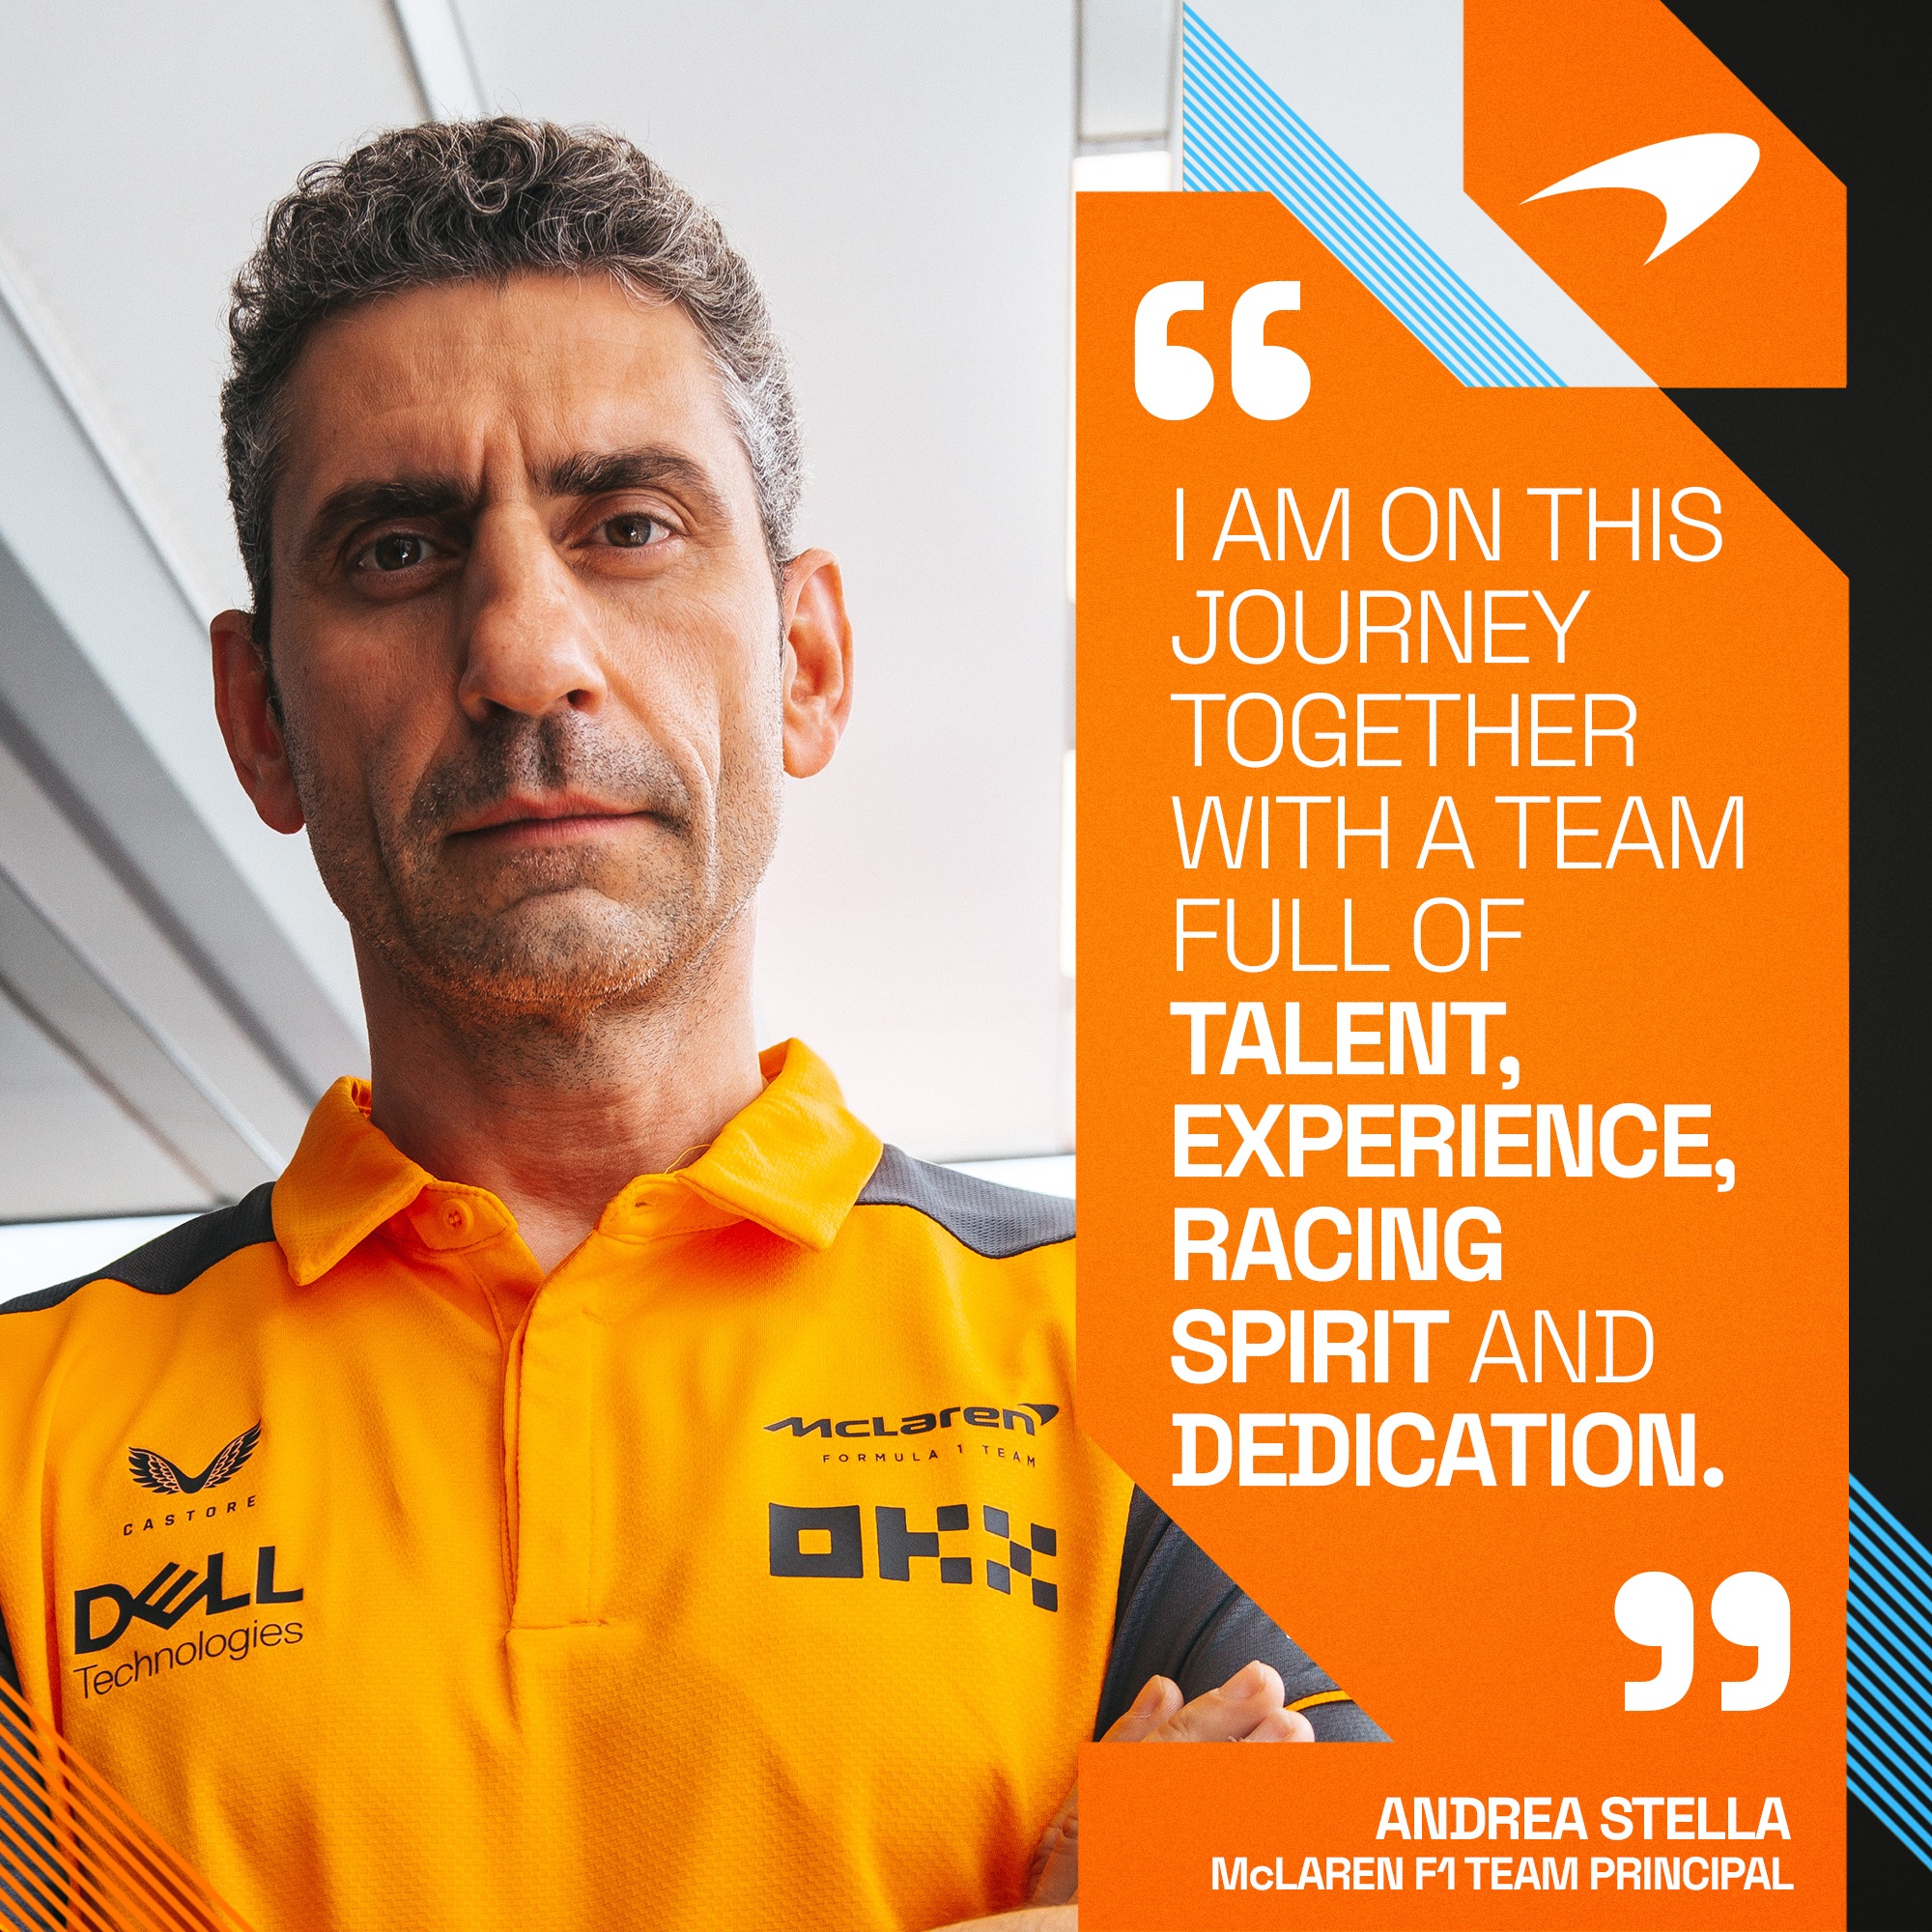 L’ingegnere orvietano Andrea Stella è il nuovo Team Principal F1 di McLaren